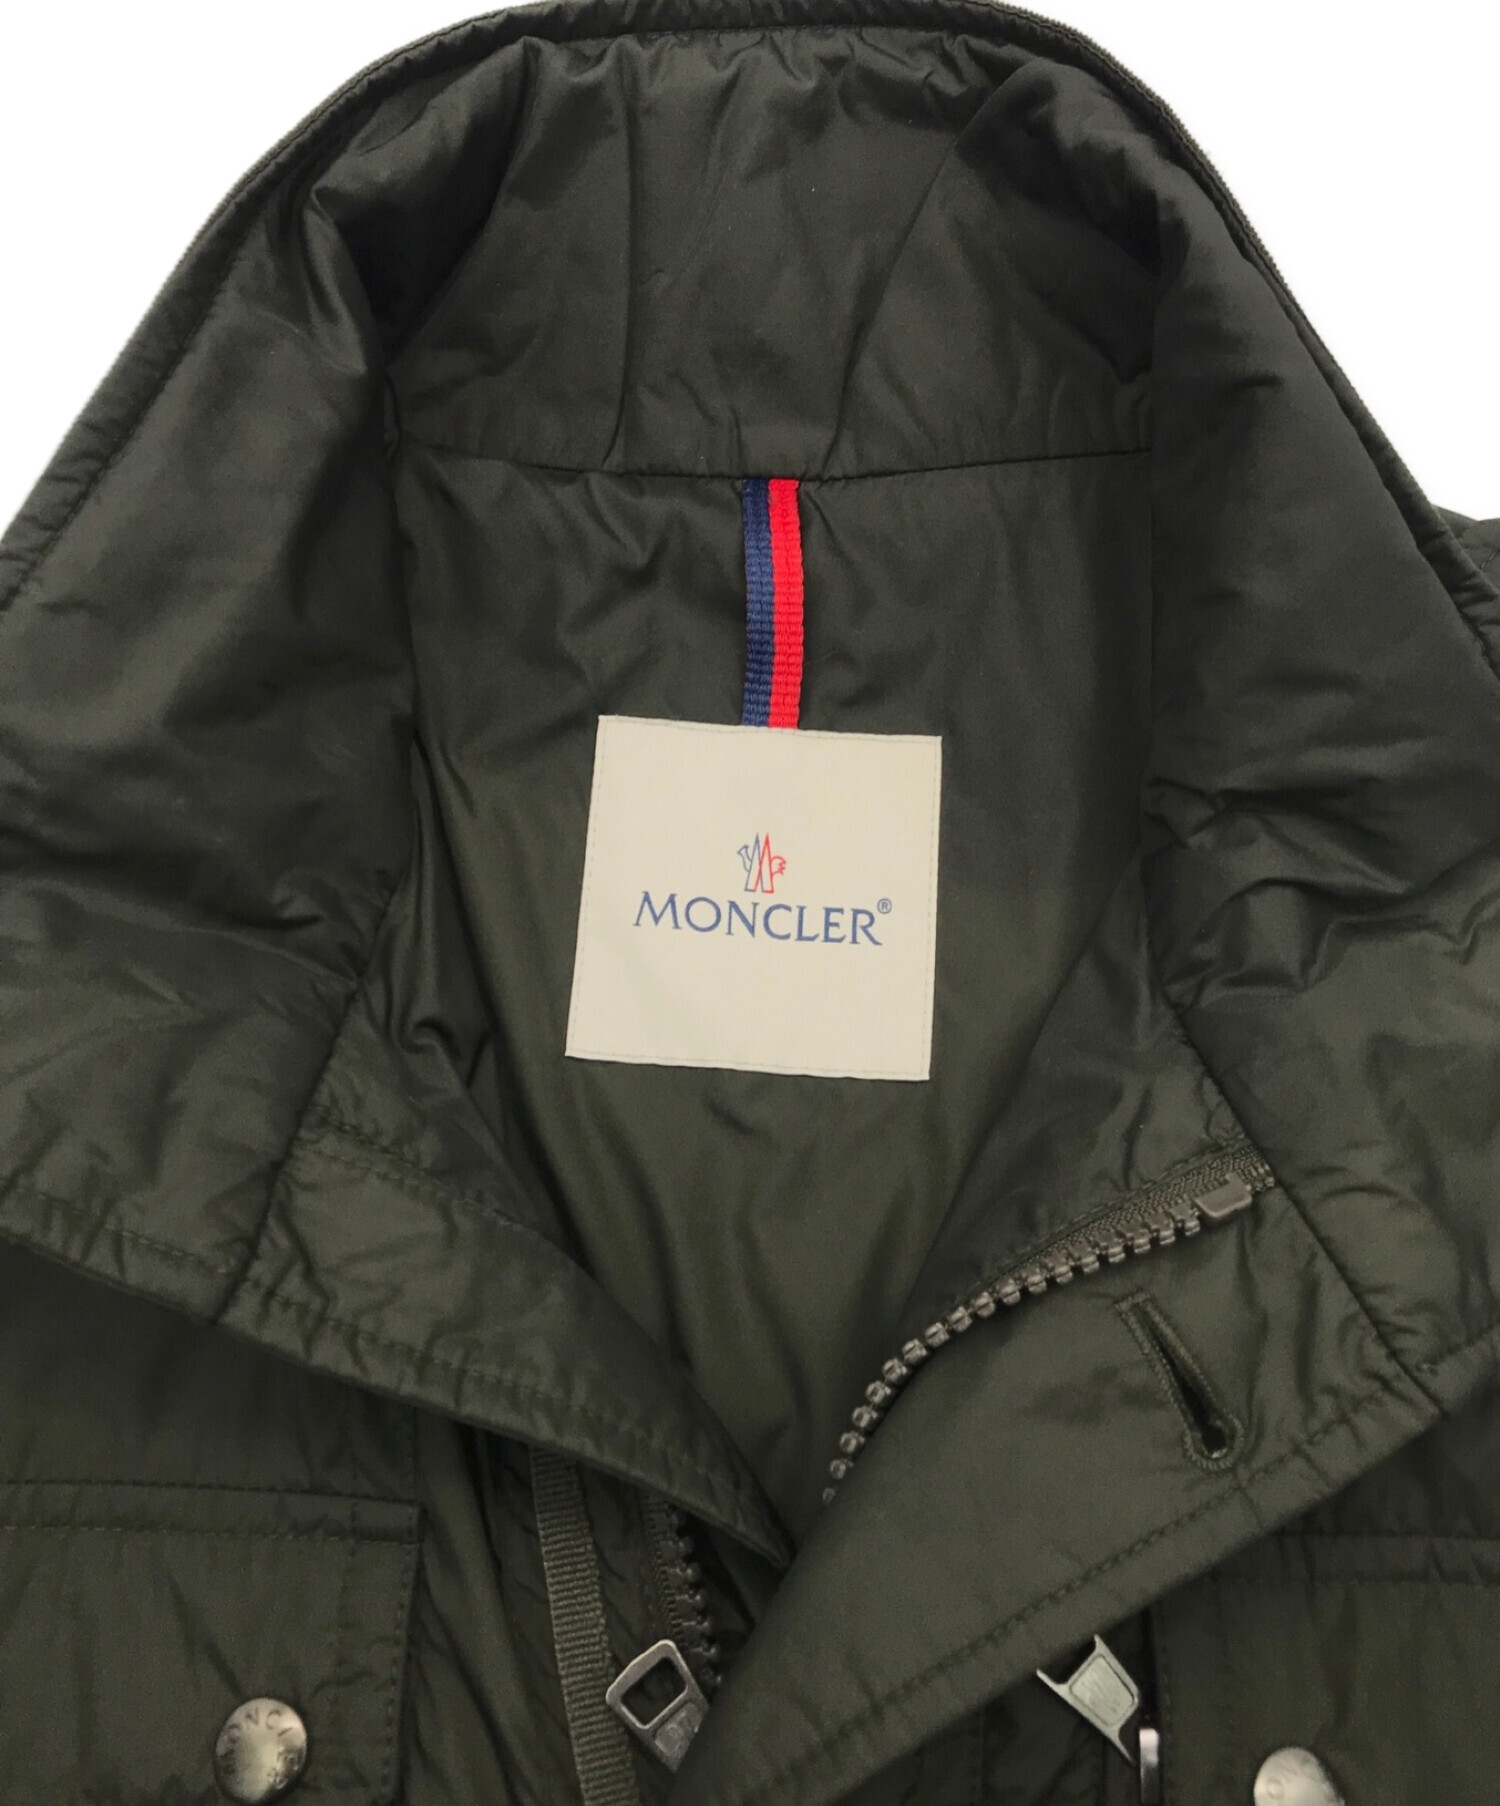 MONCLER (モンクレール) M-65フィールドジャケット オリーブ サイズ:1